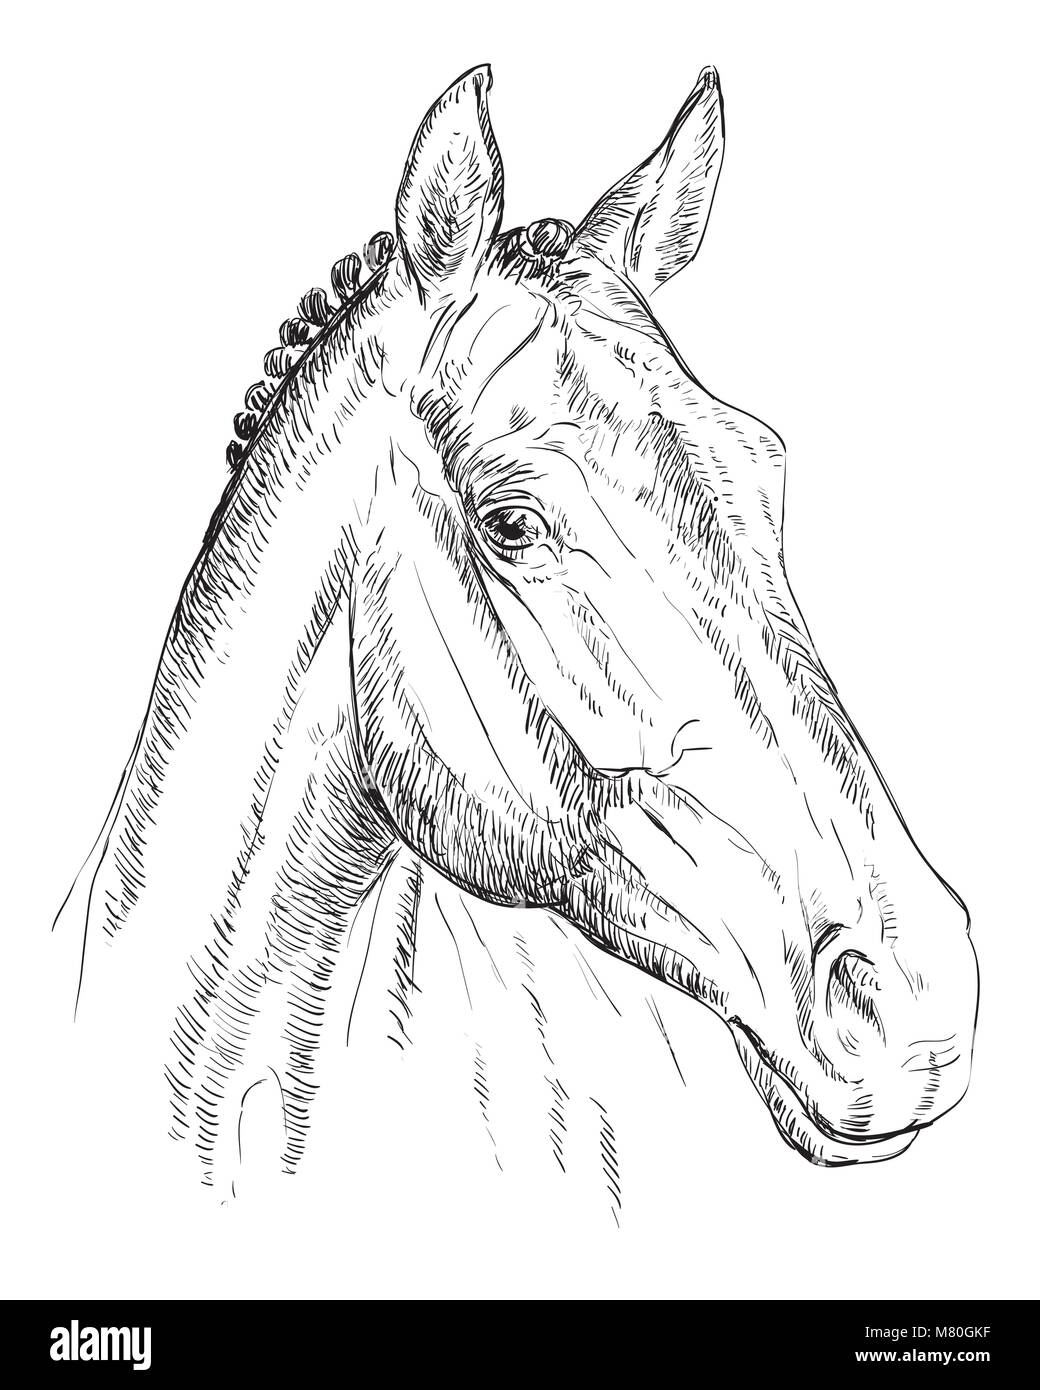 Trakehner Porträt. Pferdekopf im Profil in Schwarzweiß Farbe auf weißem Hintergrund. Vektor hand Zeichnung Abbildung Stock Vektor